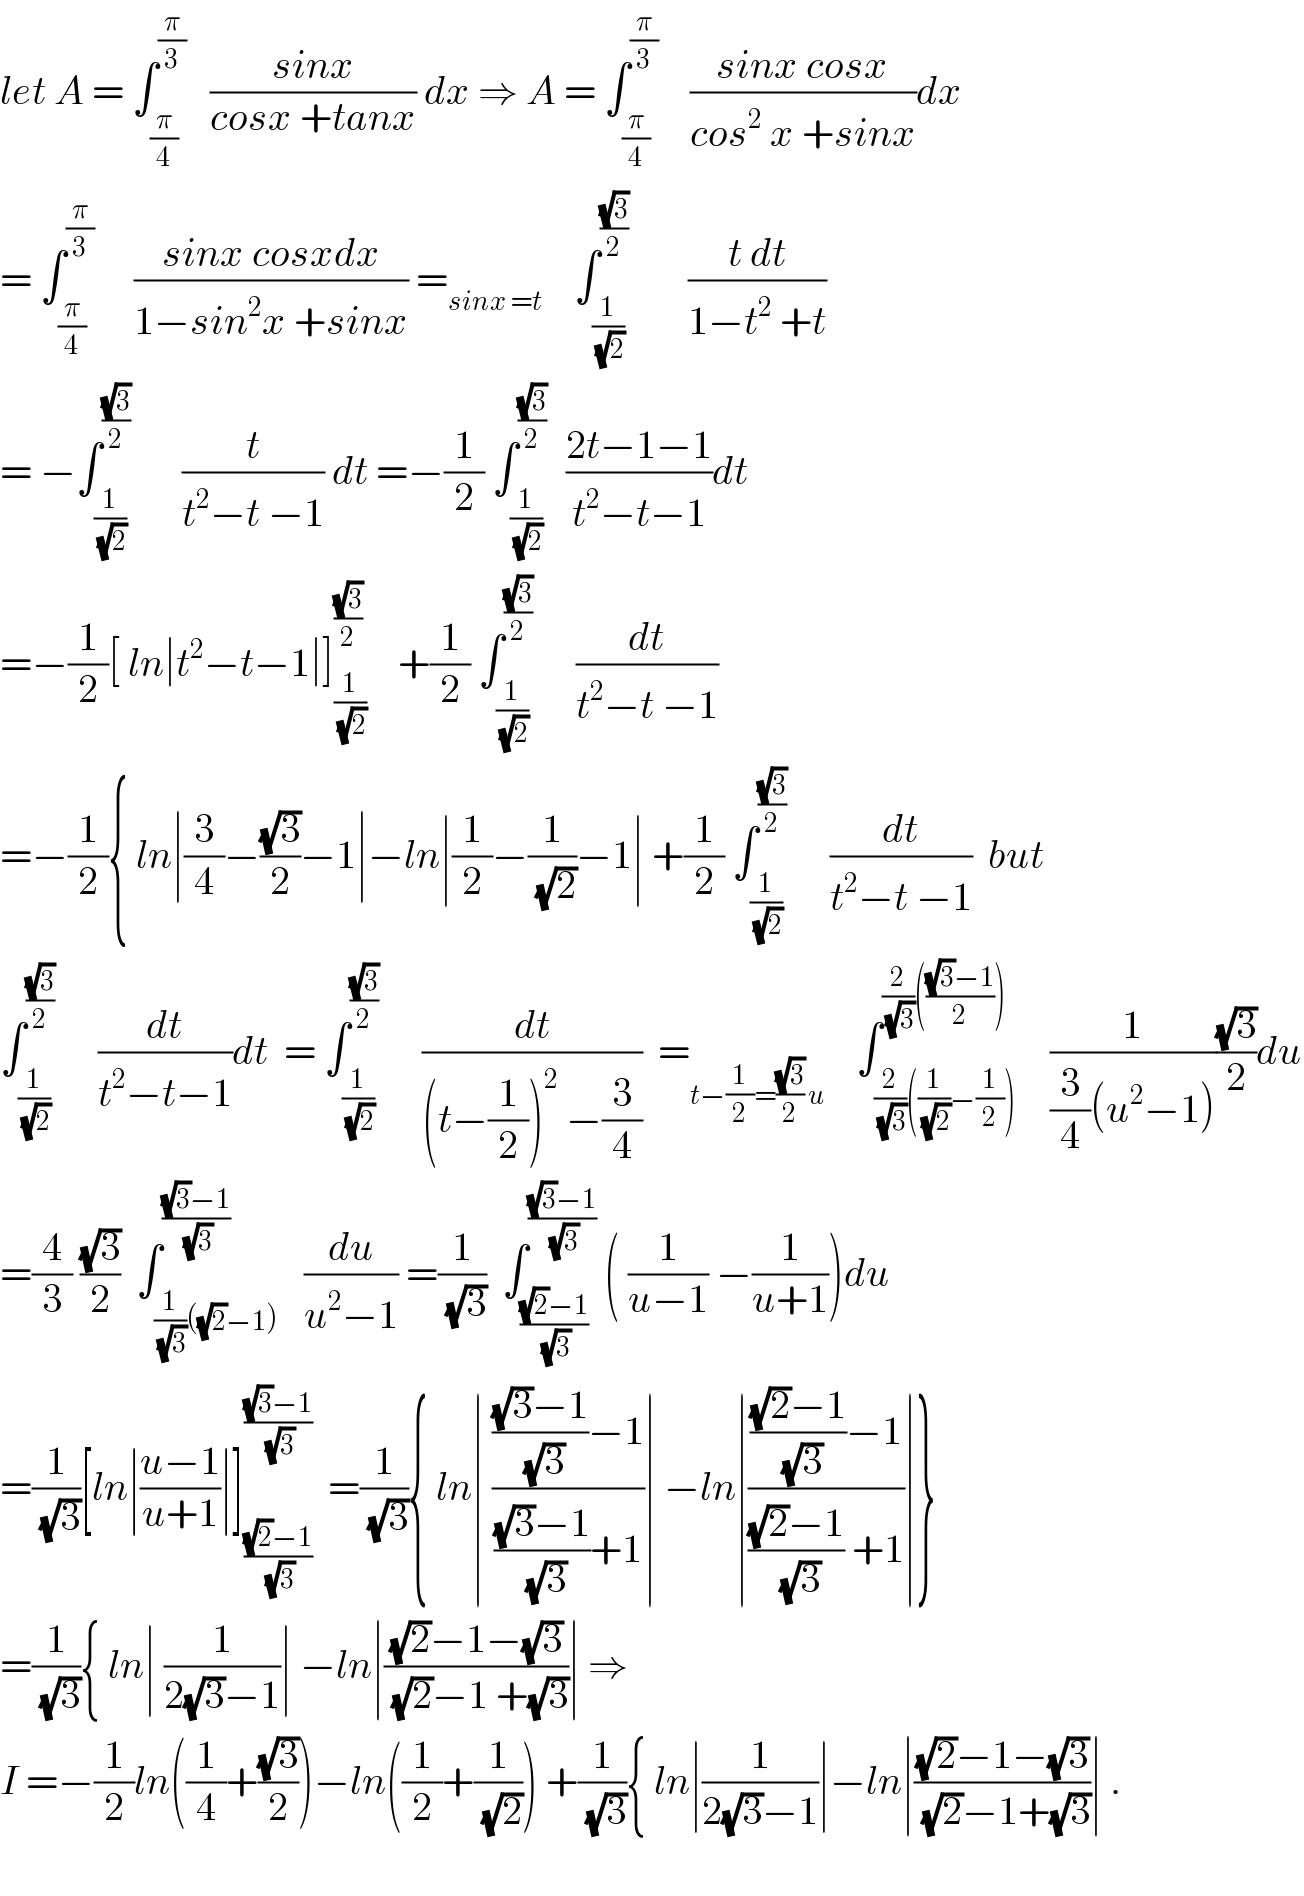 let A = ∫_(π/4) ^(π/3)    ((sinx)/(cosx +tanx)) dx ⇒ A = ∫_(π/4) ^(π/3)     ((sinx cosx)/(cos^2  x +sinx))dx  = ∫_(π/4) ^(π/3)      ((sinx cosxdx)/(1−sin^2 x +sinx)) =_(sinx =t)     ∫_(1/(√2)) ^((√3)/2)        ((t dt)/(1−t^2  +t))  = −∫_(1/(√2)) ^((√3)/2)       (t/(t^2 −t −1)) dt =−(1/2) ∫_(1/(√2)) ^((√3)/2)   ((2t−1−1)/(t^2 −t−1))dt  =−(1/2)[ ln∣t^2 −t−1∣]_(1/(√2)) ^((√3)/2)     +(1/2) ∫_(1/(√2)) ^((√3)/2)      (dt/(t^2 −t −1))  =−(1/2){ ln∣(3/4)−((√3)/2)−1∣−ln∣(1/2)−(1/(√2))−1∣ +(1/2) ∫_(1/(√2)) ^((√3)/2)      (dt/(t^2 −t −1))  but  ∫_(1/(√2)) ^((√3)/2)      (dt/(t^2 −t−1))dt  = ∫_(1/(√2)) ^((√3)/2)      (dt/((t−(1/2))^2  −(3/4)))  =_(t−(1/2)=((√3)/2) u)     ∫_((2/(√3))((1/(√2))−(1/2))) ^((2/(√3))((((√3)−1)/2)))    (1/((3/4)(u^2 −1)))((√3)/2)du  =(4/3) ((√3)/2)  ∫_((1/(√3))((√2)−1)) ^(((√3)−1)/(√3))   (du/(u^2 −1)) =(1/(√3))  ∫_(((√2)−1)/(√3)) ^(((√3)−1)/(√3))  ( (1/(u−1)) −(1/(u+1)))du  =(1/(√3))[ln∣((u−1)/(u+1))∣]_(((√2)−1)/(√3)) ^(((√3)−1)/(√3))   =(1/(√3)){ ln∣ (((((√3)−1)/(√3))−1)/((((√3)−1)/(√3))+1))∣ −ln∣(((((√2)−1)/(√3))−1)/((((√2)−1)/(√3)) +1))∣}  =(1/(√3)){ ln∣ (1/(2(√3)−1))∣ −ln∣(((√2)−1−(√3))/((√2)−1 +(√3)))∣ ⇒  I =−(1/2)ln((1/4)+((√3)/2))−ln((1/2)+(1/(√2))) +(1/(√3)){ ln∣(1/(2(√3)−1))∣−ln∣(((√2)−1−(√3))/((√2)−1+(√3)))∣ .    